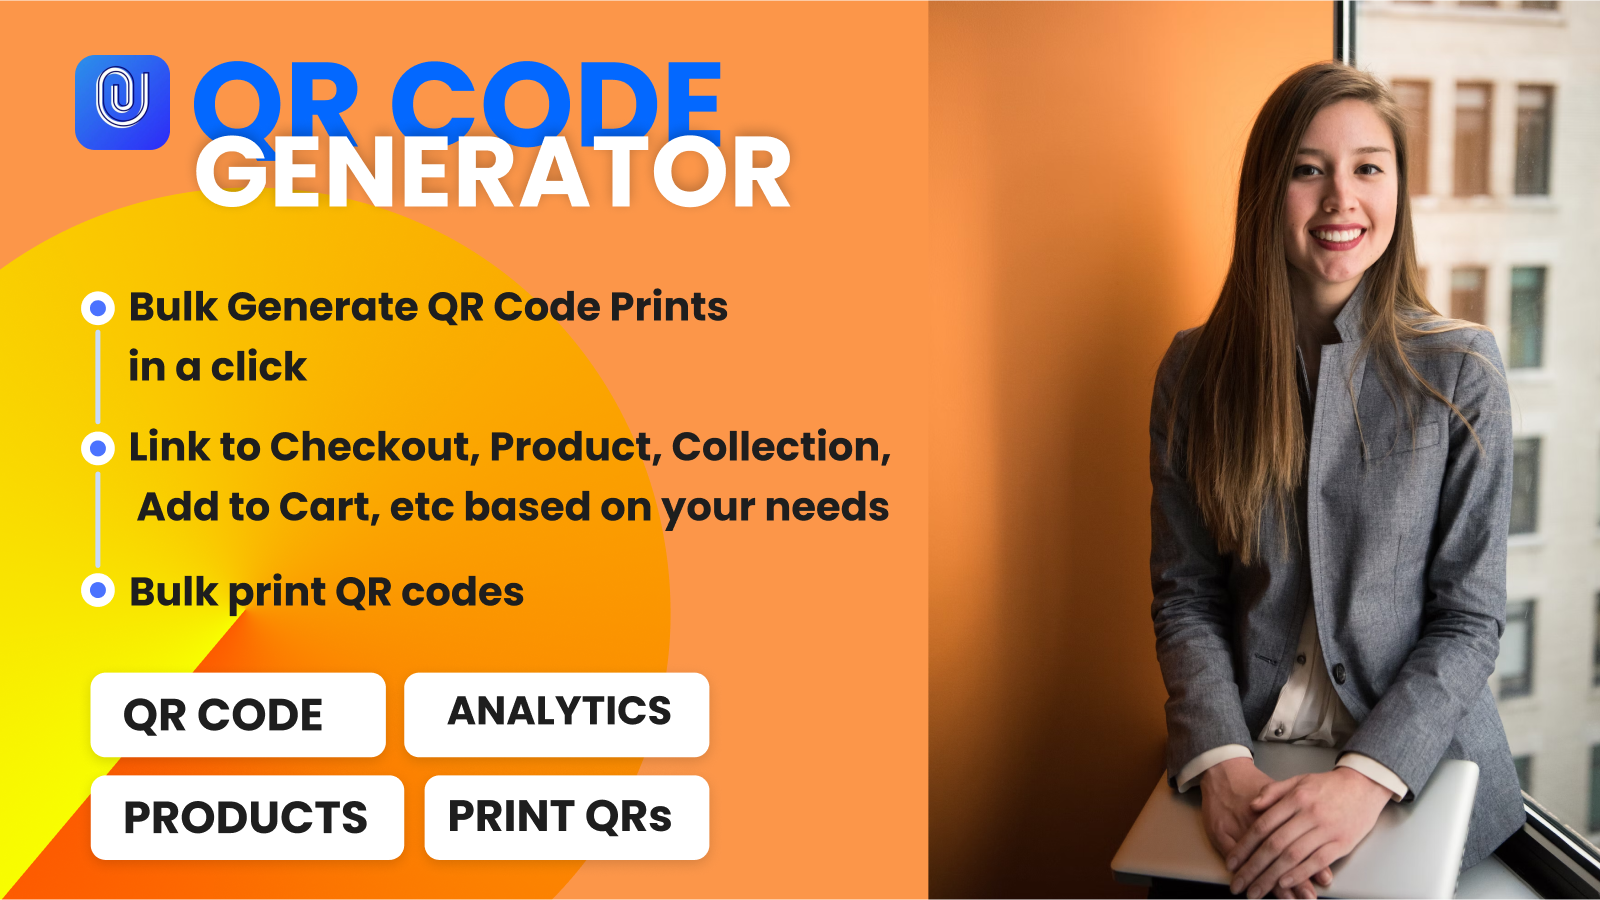 Generador de códigos QR para tienda para generar códigos QR de productos